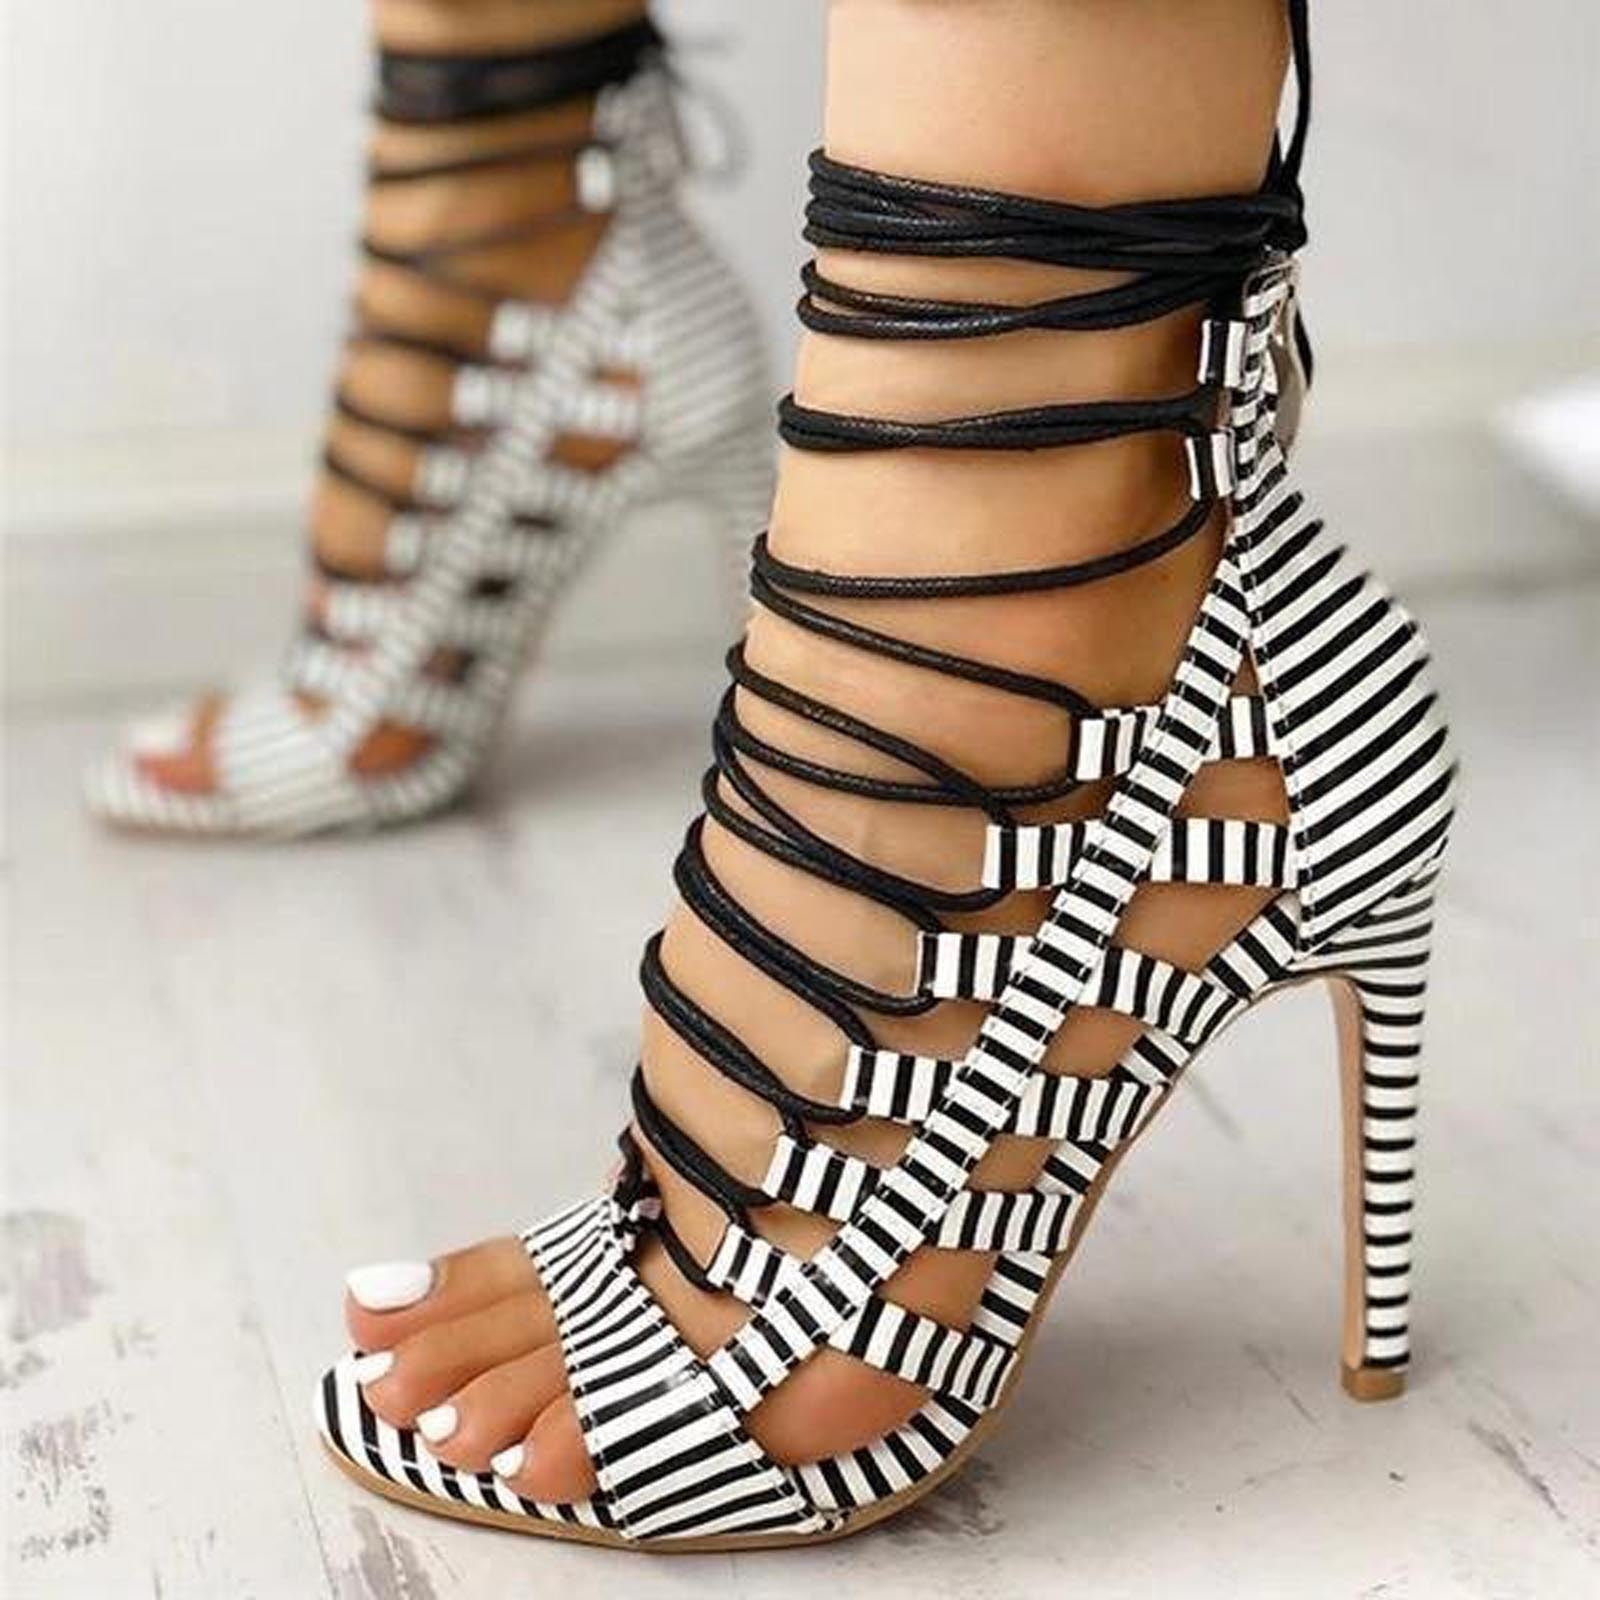 Alice + Olivia Snake Skin Heels in Black/White. Size 8. Brand New in Box. |  eBay